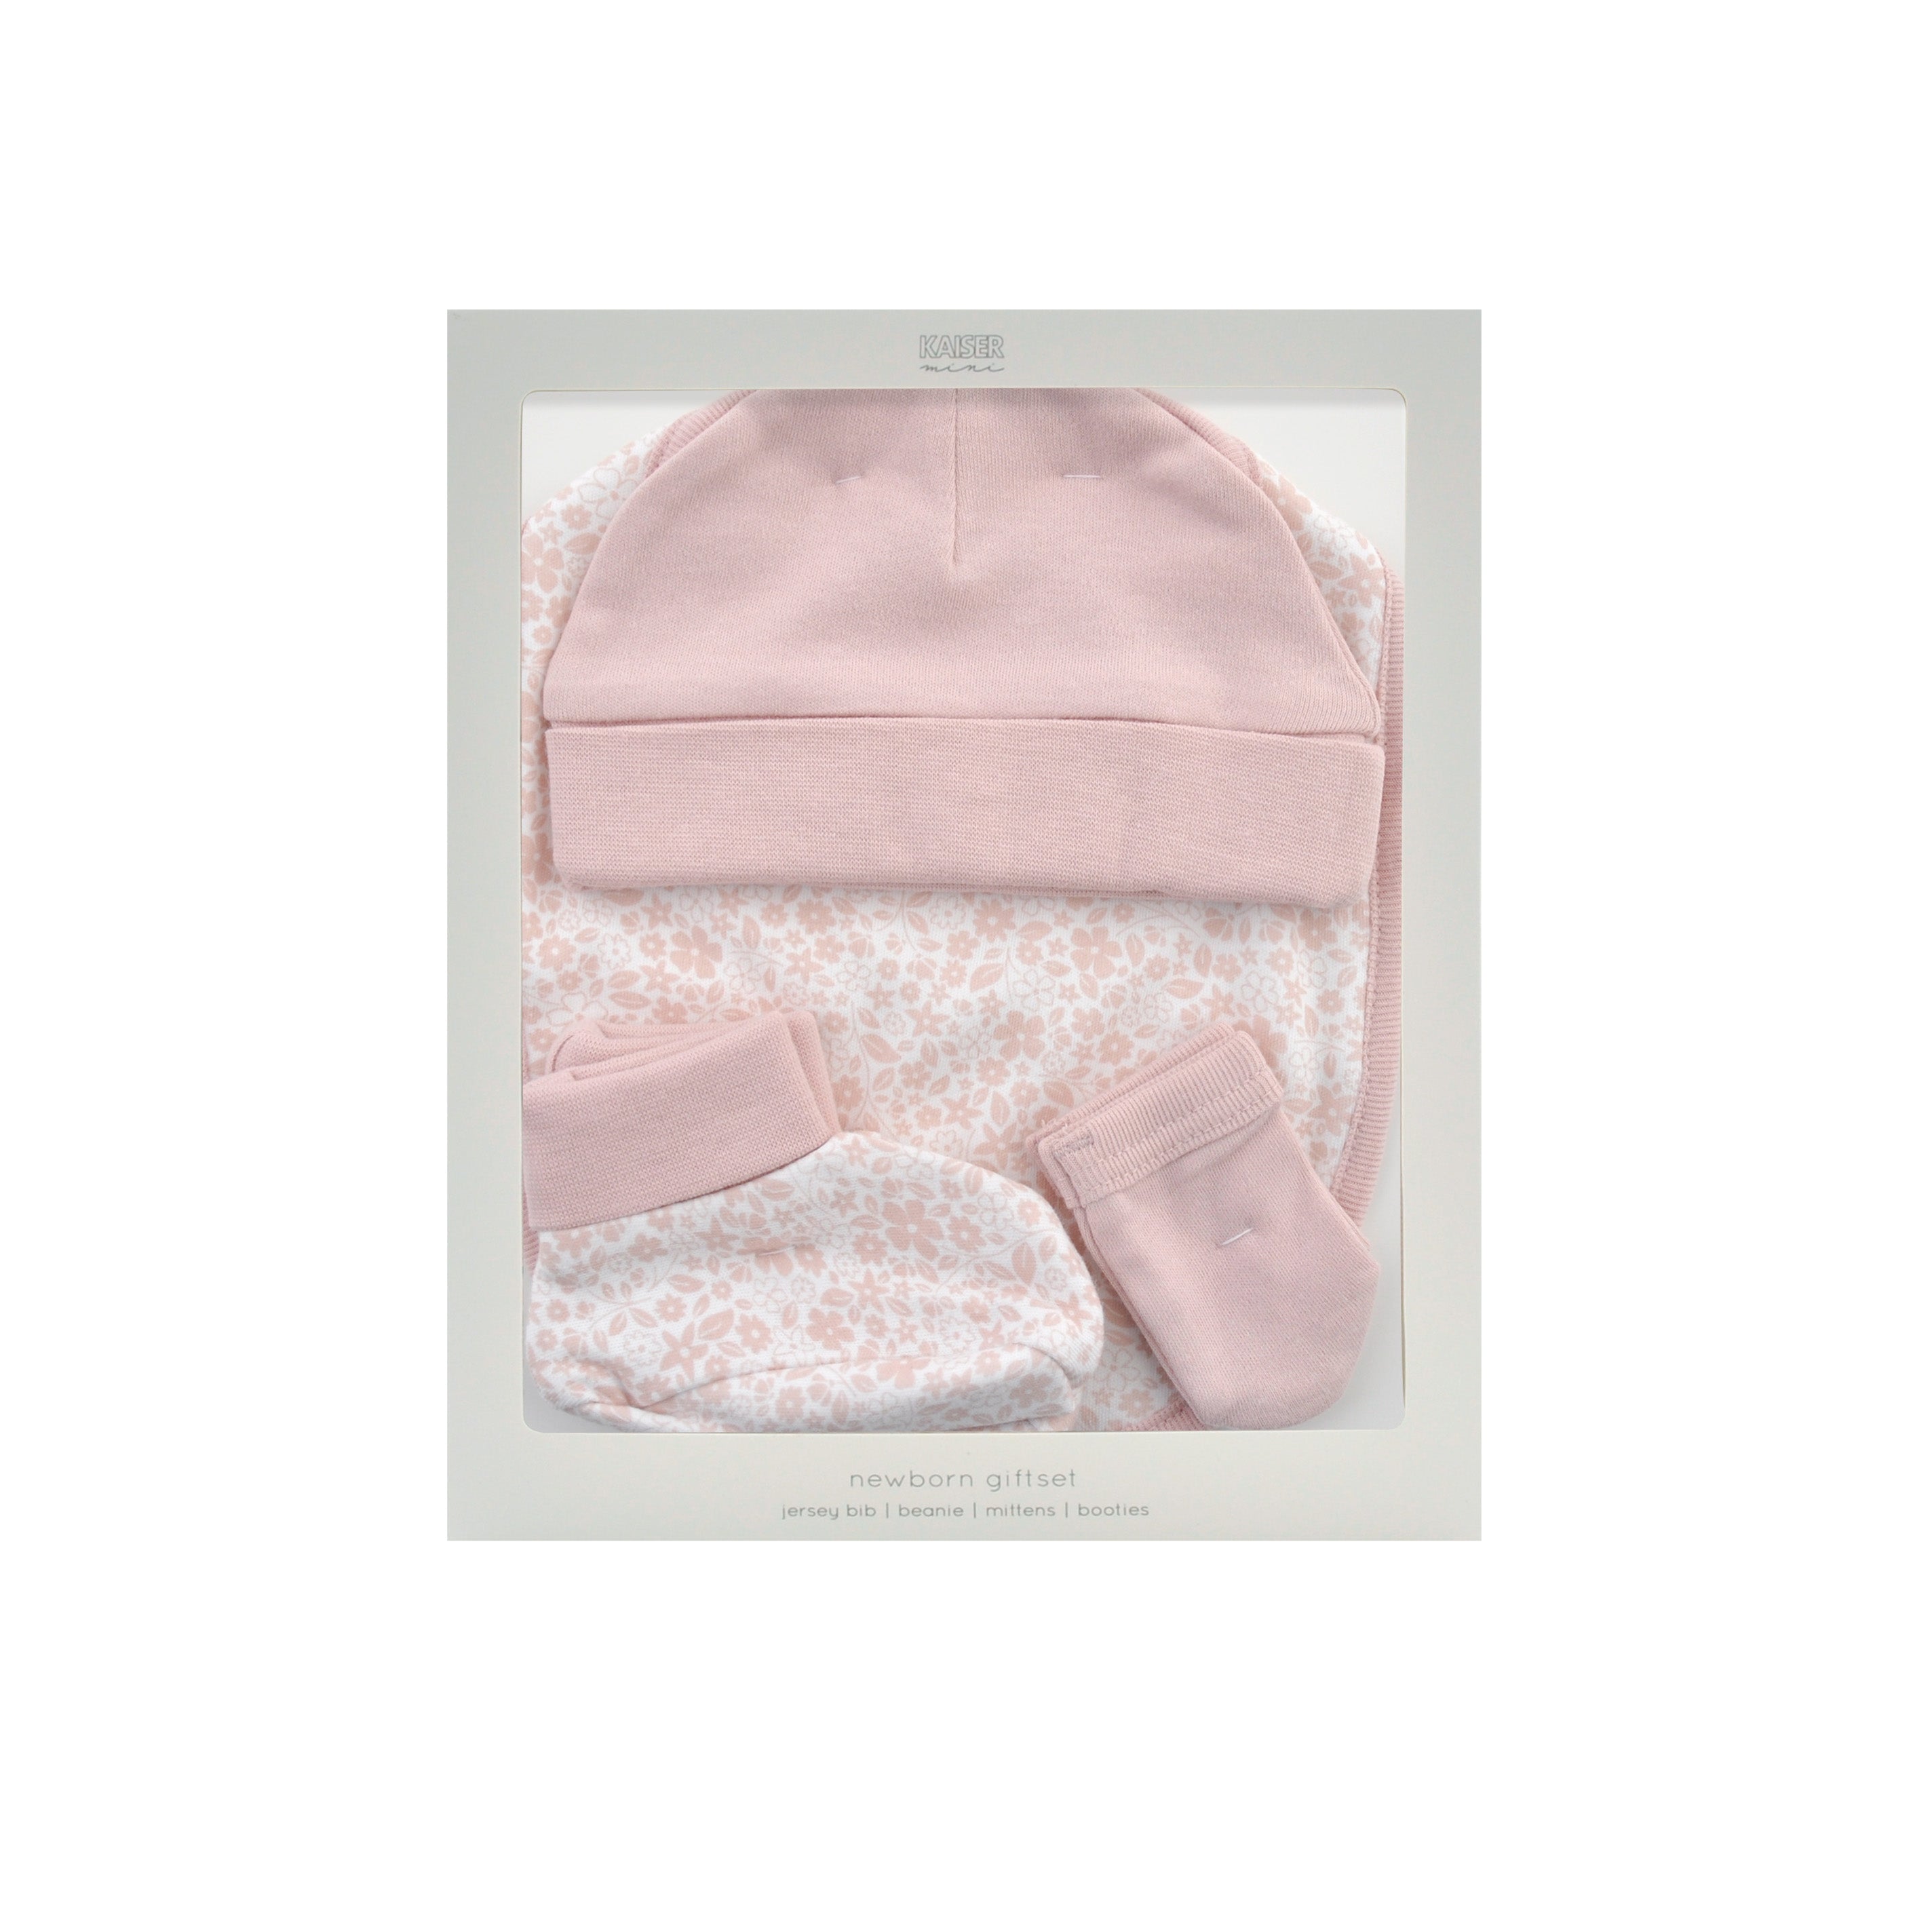 Baby Newborn Gift Set - Pink Bloom